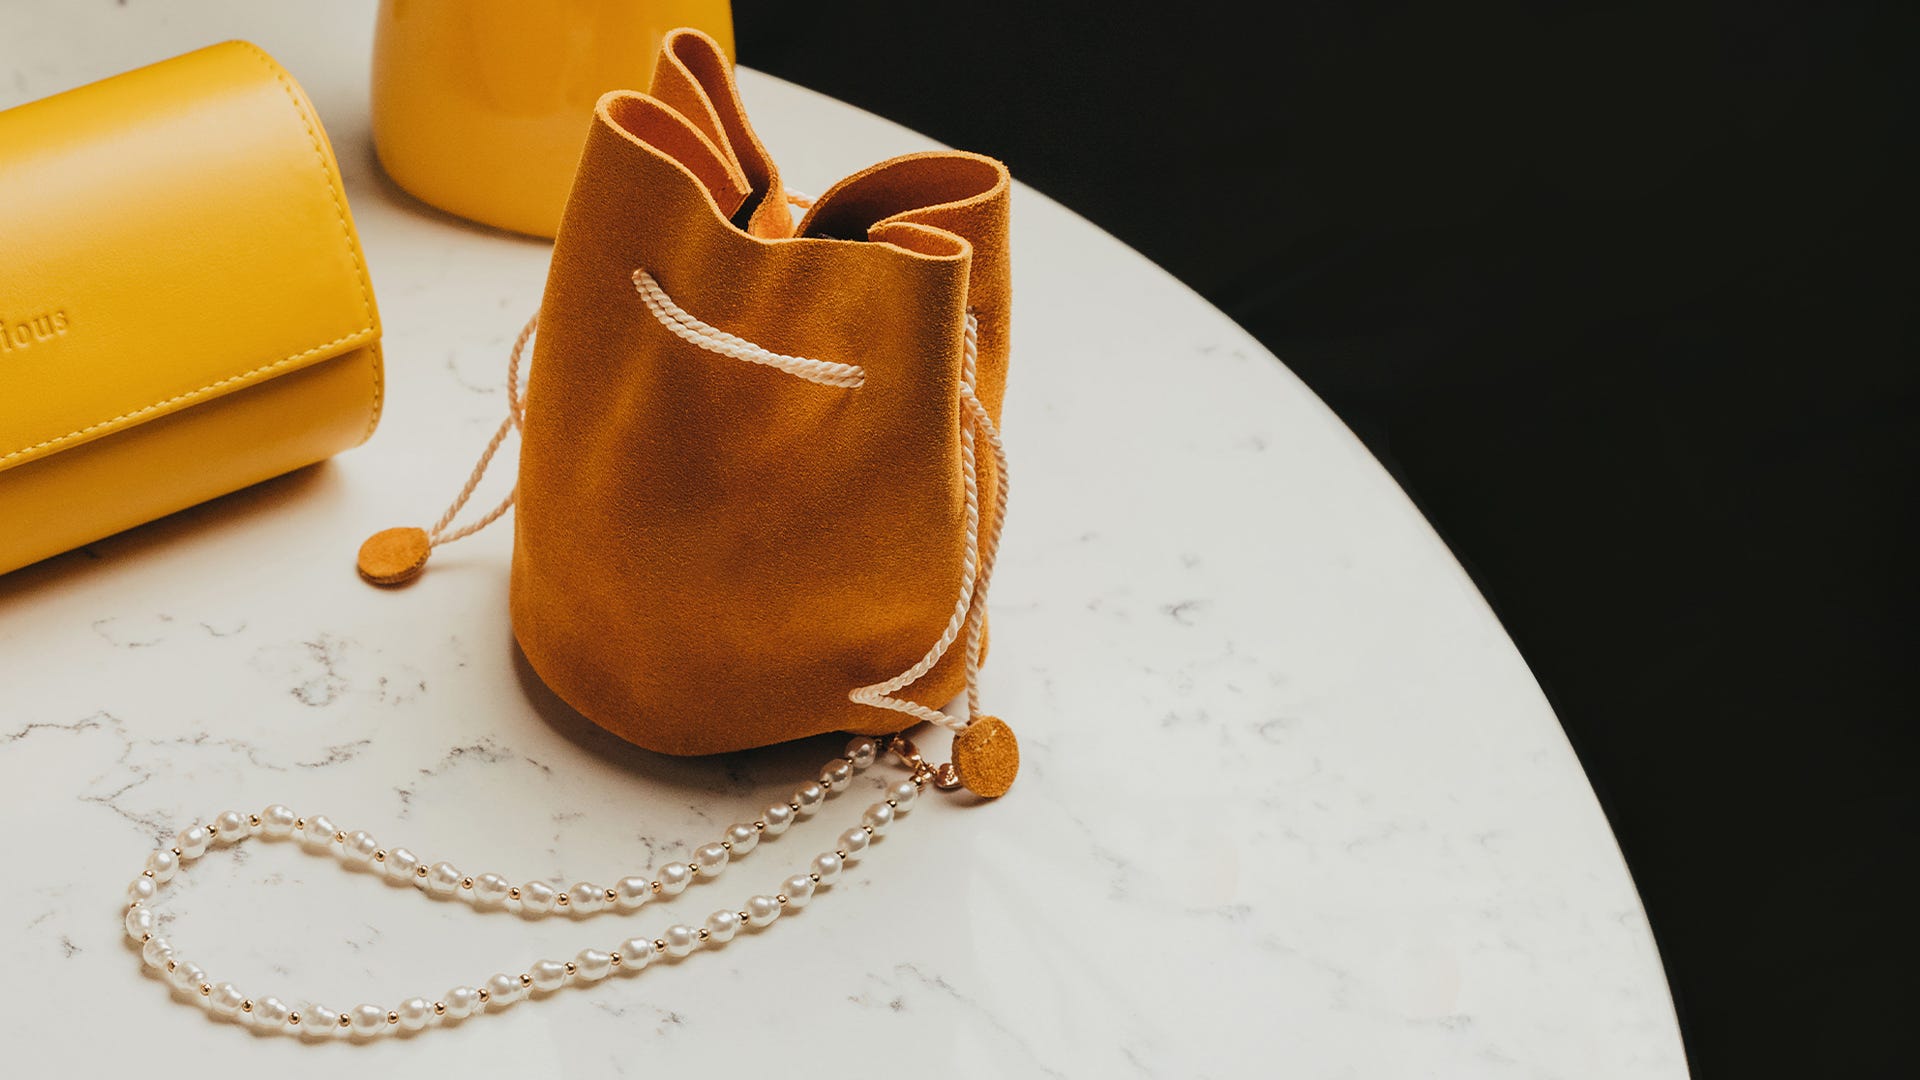 Mini Copper Purse Chains Shoulder Crossbody Strap Bag Accessories Charm  Decoration (Antique Gold,13'')